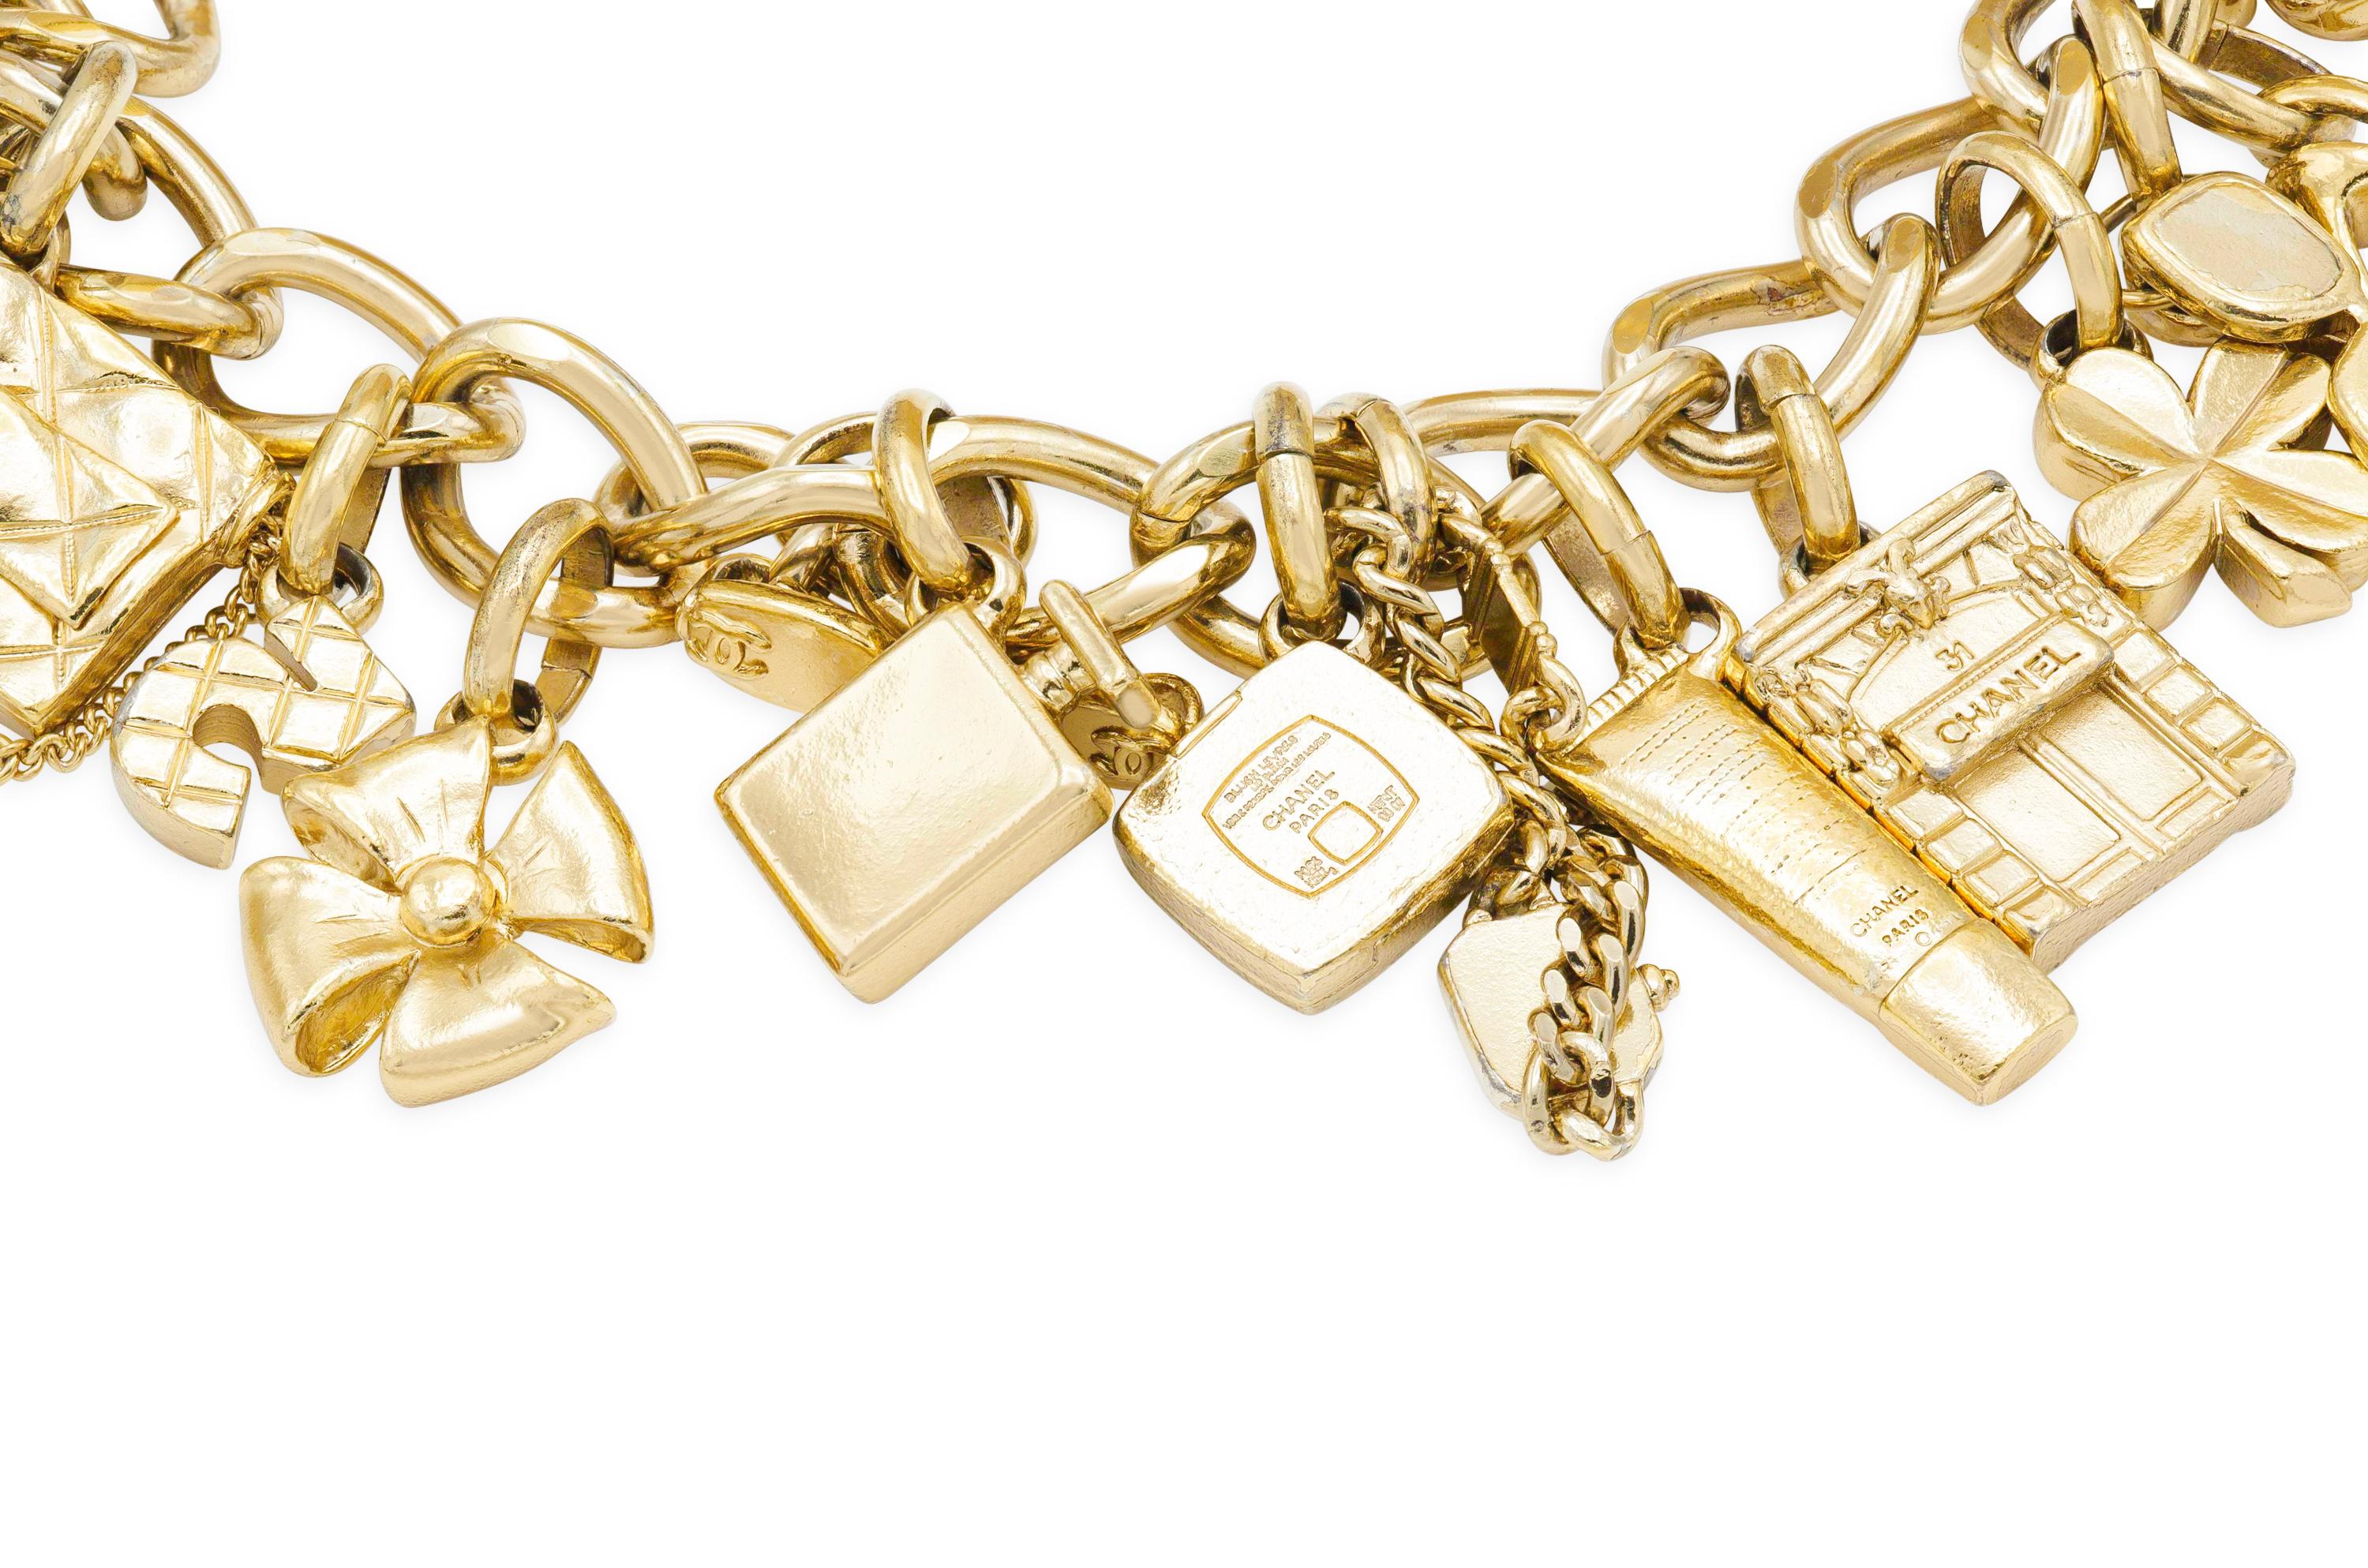 Goldgefülltes Bettelarmband mit 16 original Chanel Charms. 
Größe 8 1/4 Zoll.
Signiert von Chanel.